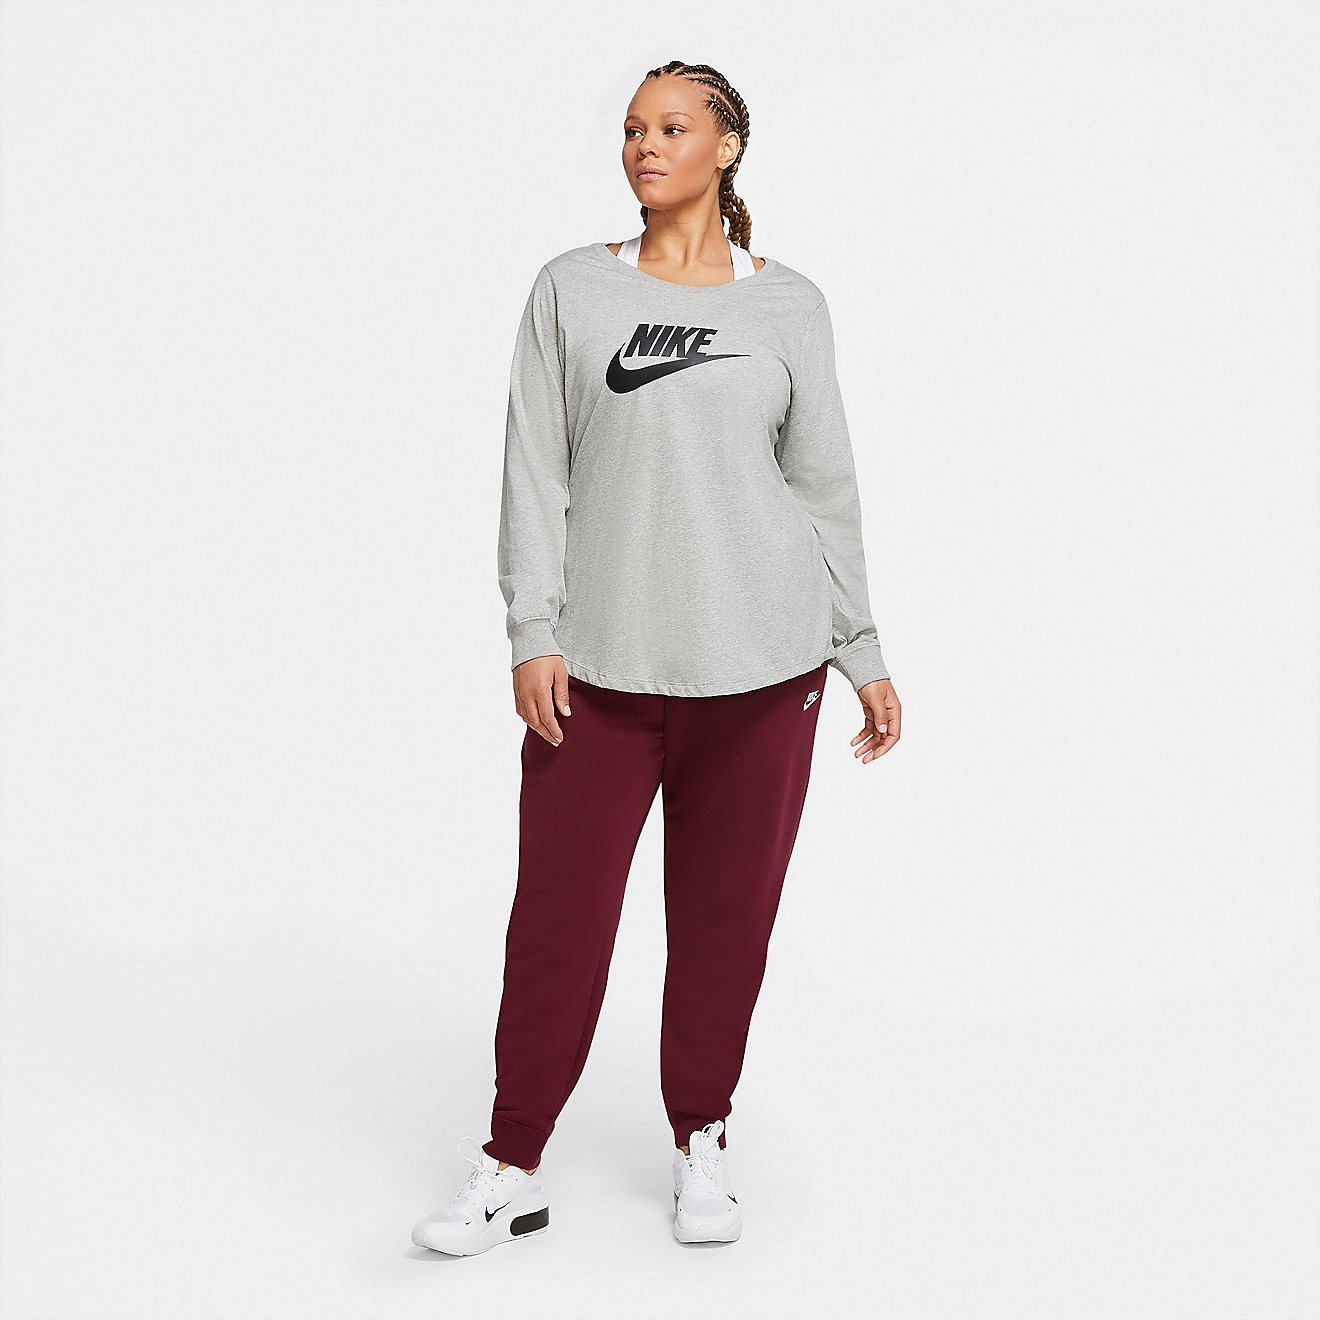 Nike Women's Sportswear Essentials Plus Size Long Sleeve T-shirt